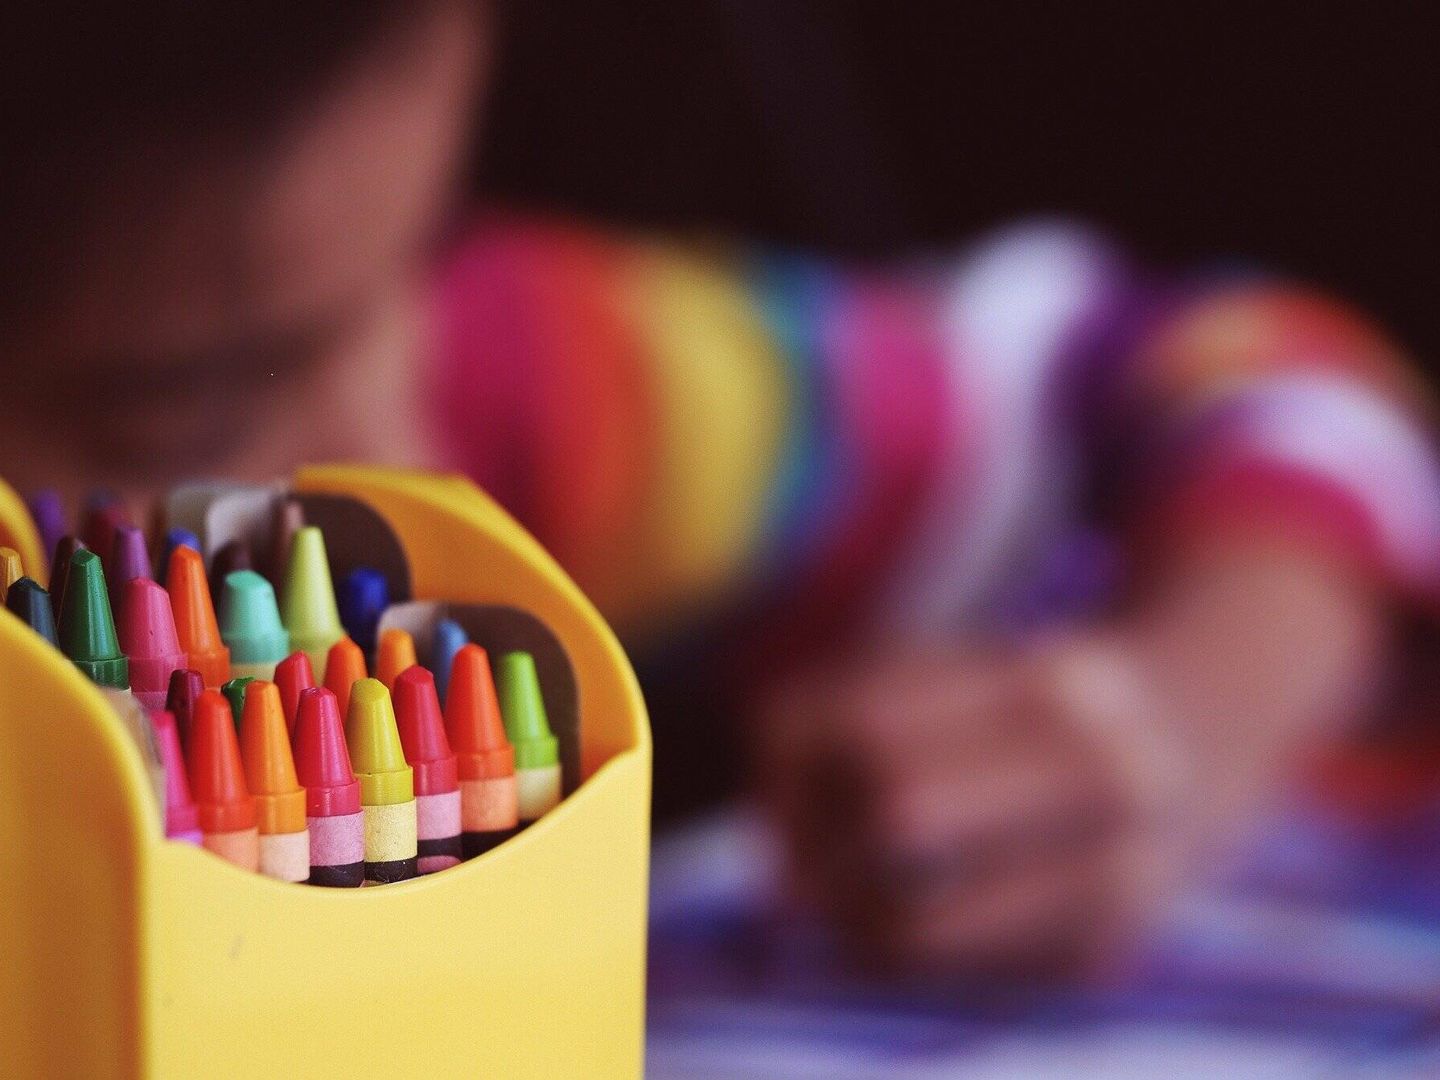 Un menor colorea en una escuela. (Pixabay)